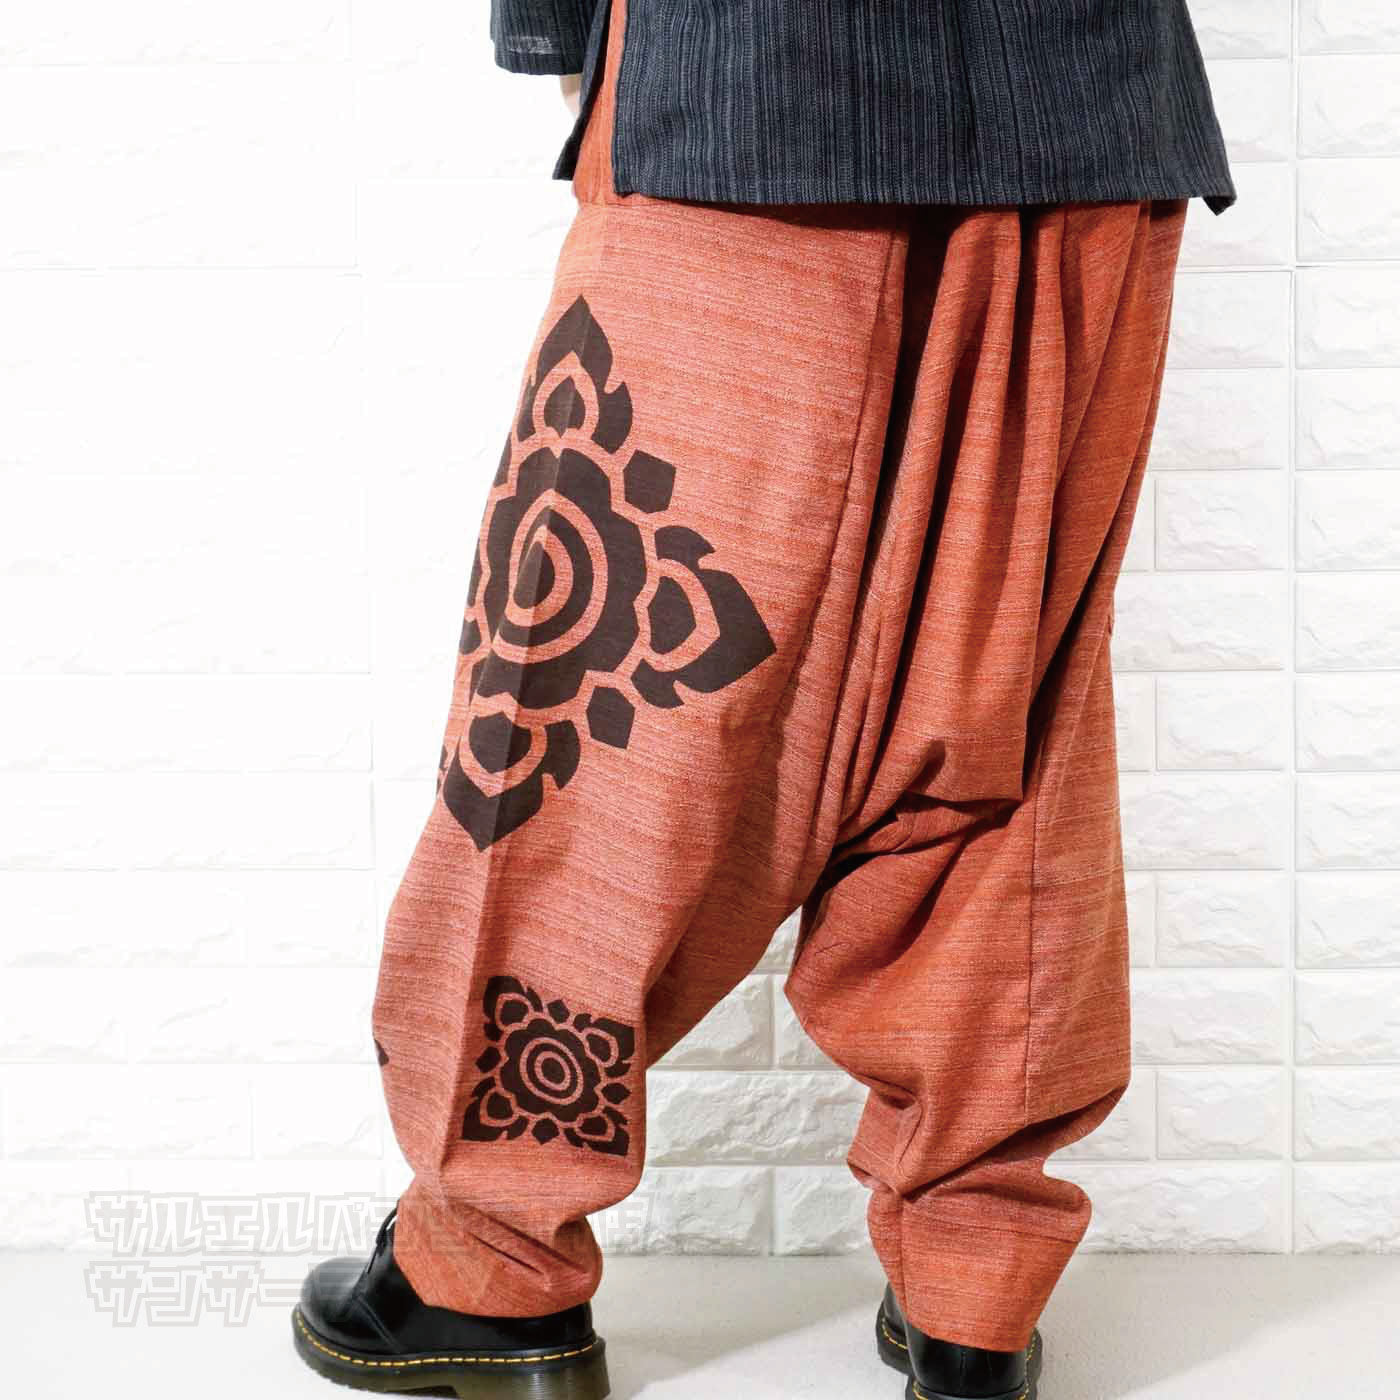 サルエルパンツ アラジンパンツ ワイドパンツ バギーパンツ メンズ レディース 大きいサイズ ゆったりサイズ ヨガ ダンス エスニック アジアン ファッションブラック